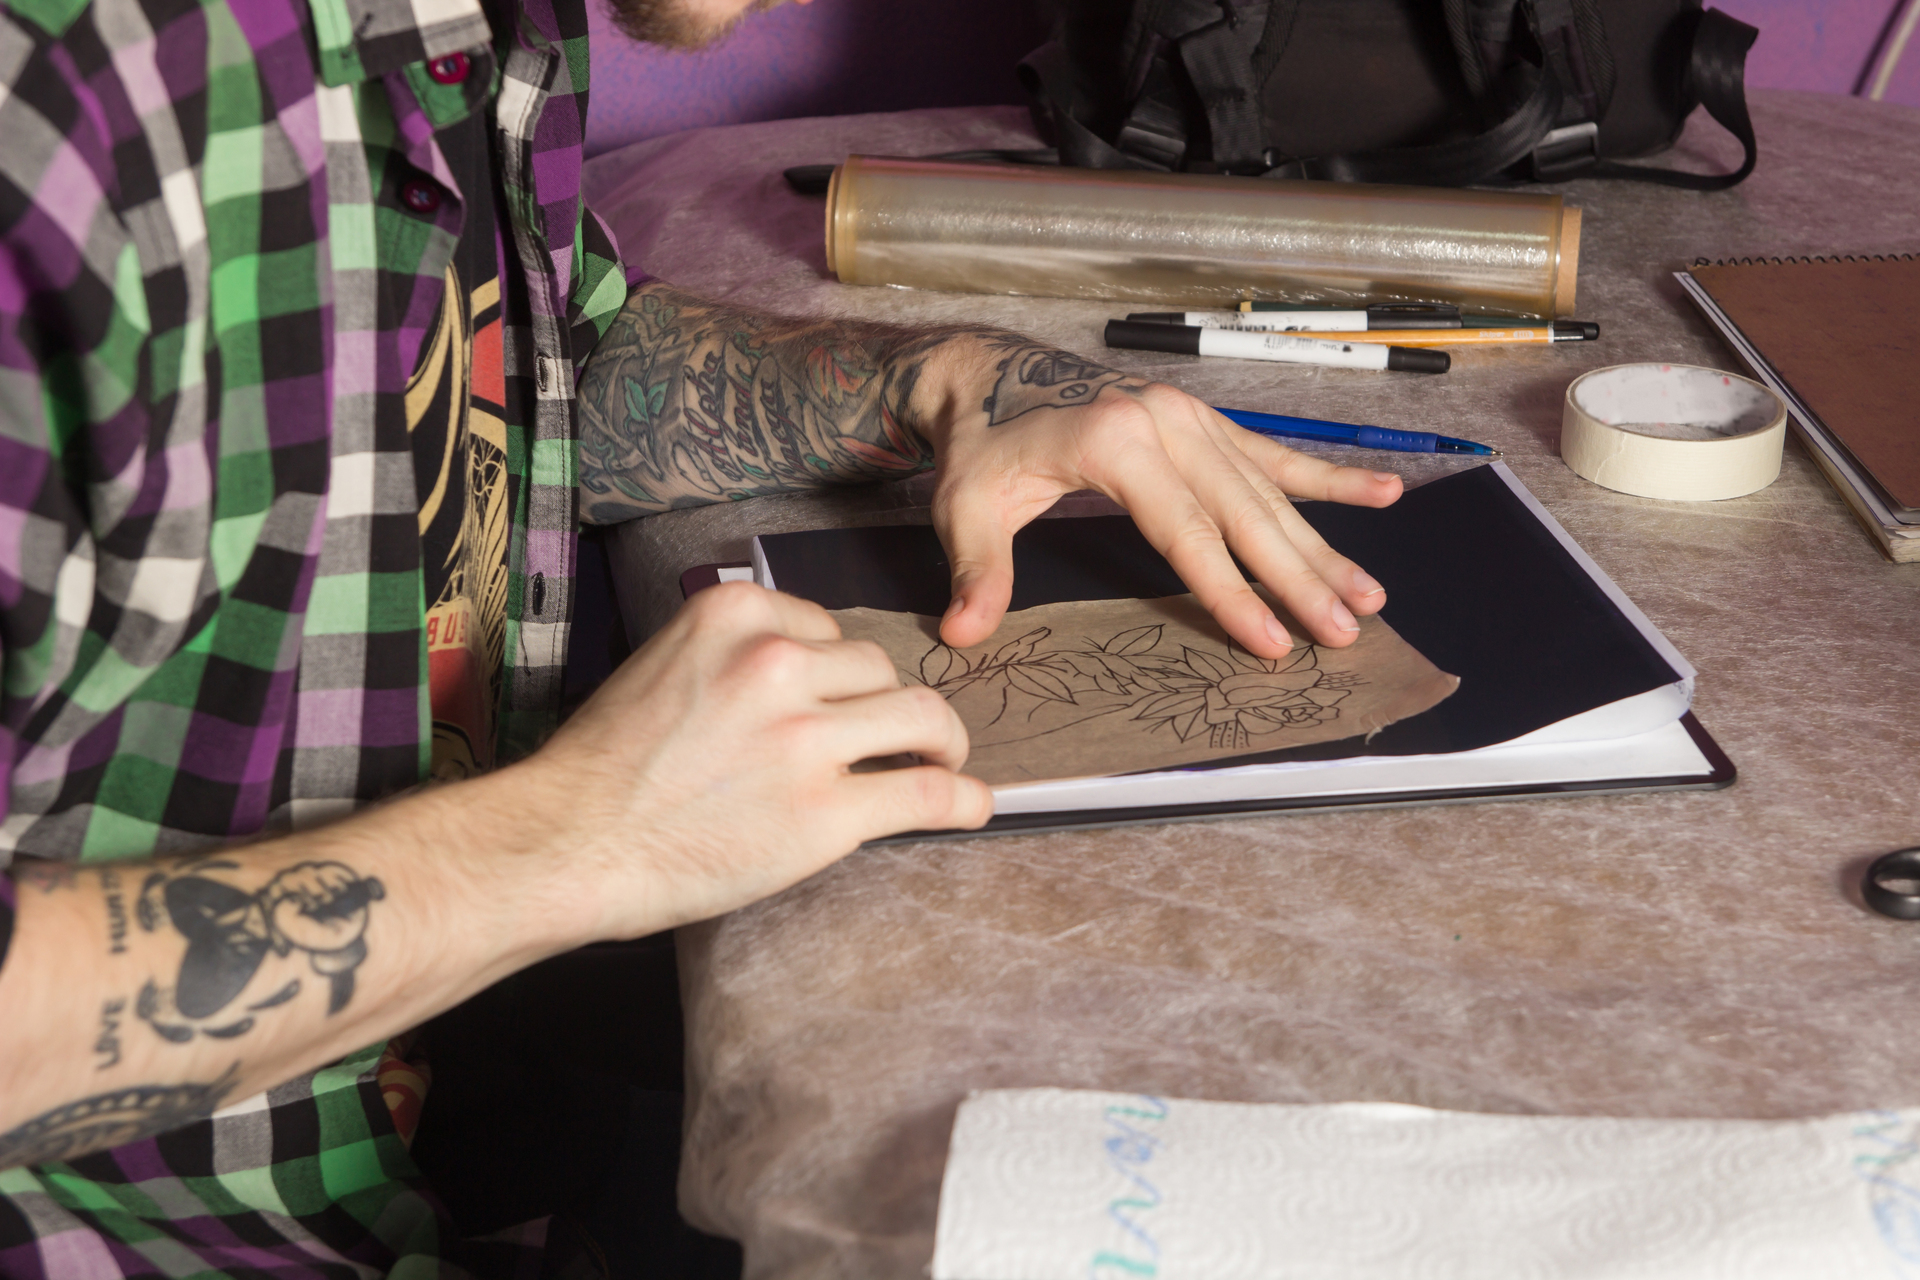 Obrazek przedstawia artystę tatuażu, który szkicuje swój nowy projekt na kartce papieru. Delikatne linie i precyzyjne kontury ożywiają koncepcję tatuażu, tworząc wstępne dzieło sztuki na płaskiej powierzchni. Ten moment twórczego procesu ilustruje umiejętności artysty, jego pomysłowość i zdolność do przenoszenia wizji na papier, przygotowując się do późniejszego etapu wykonania tatuażu na skórze